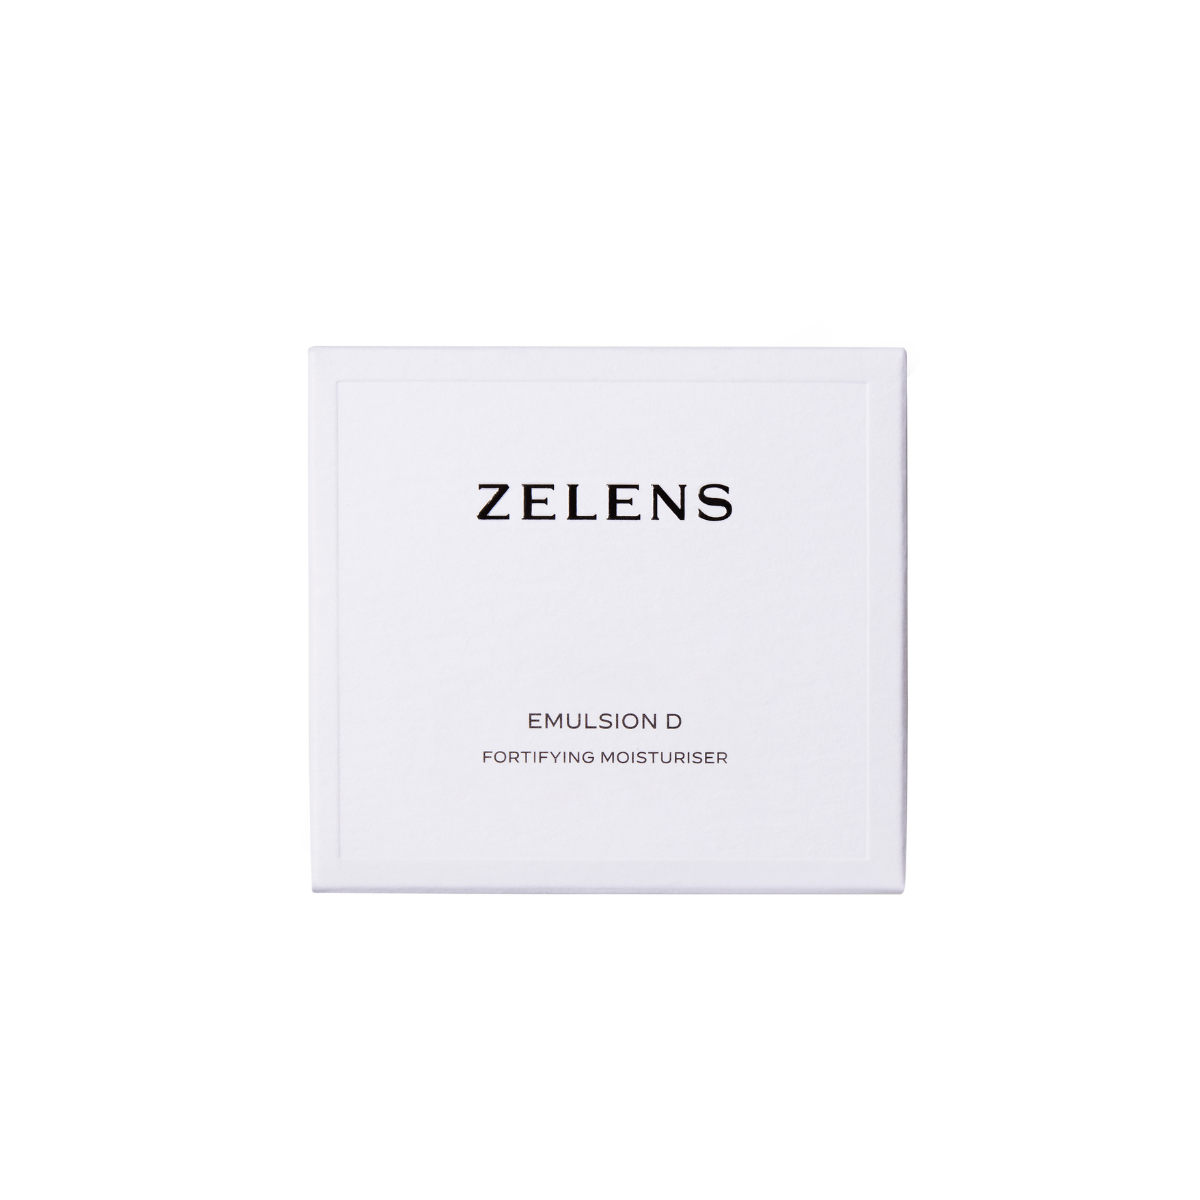 Zelens Emulsion D Fortifying Moisturiser packaging 